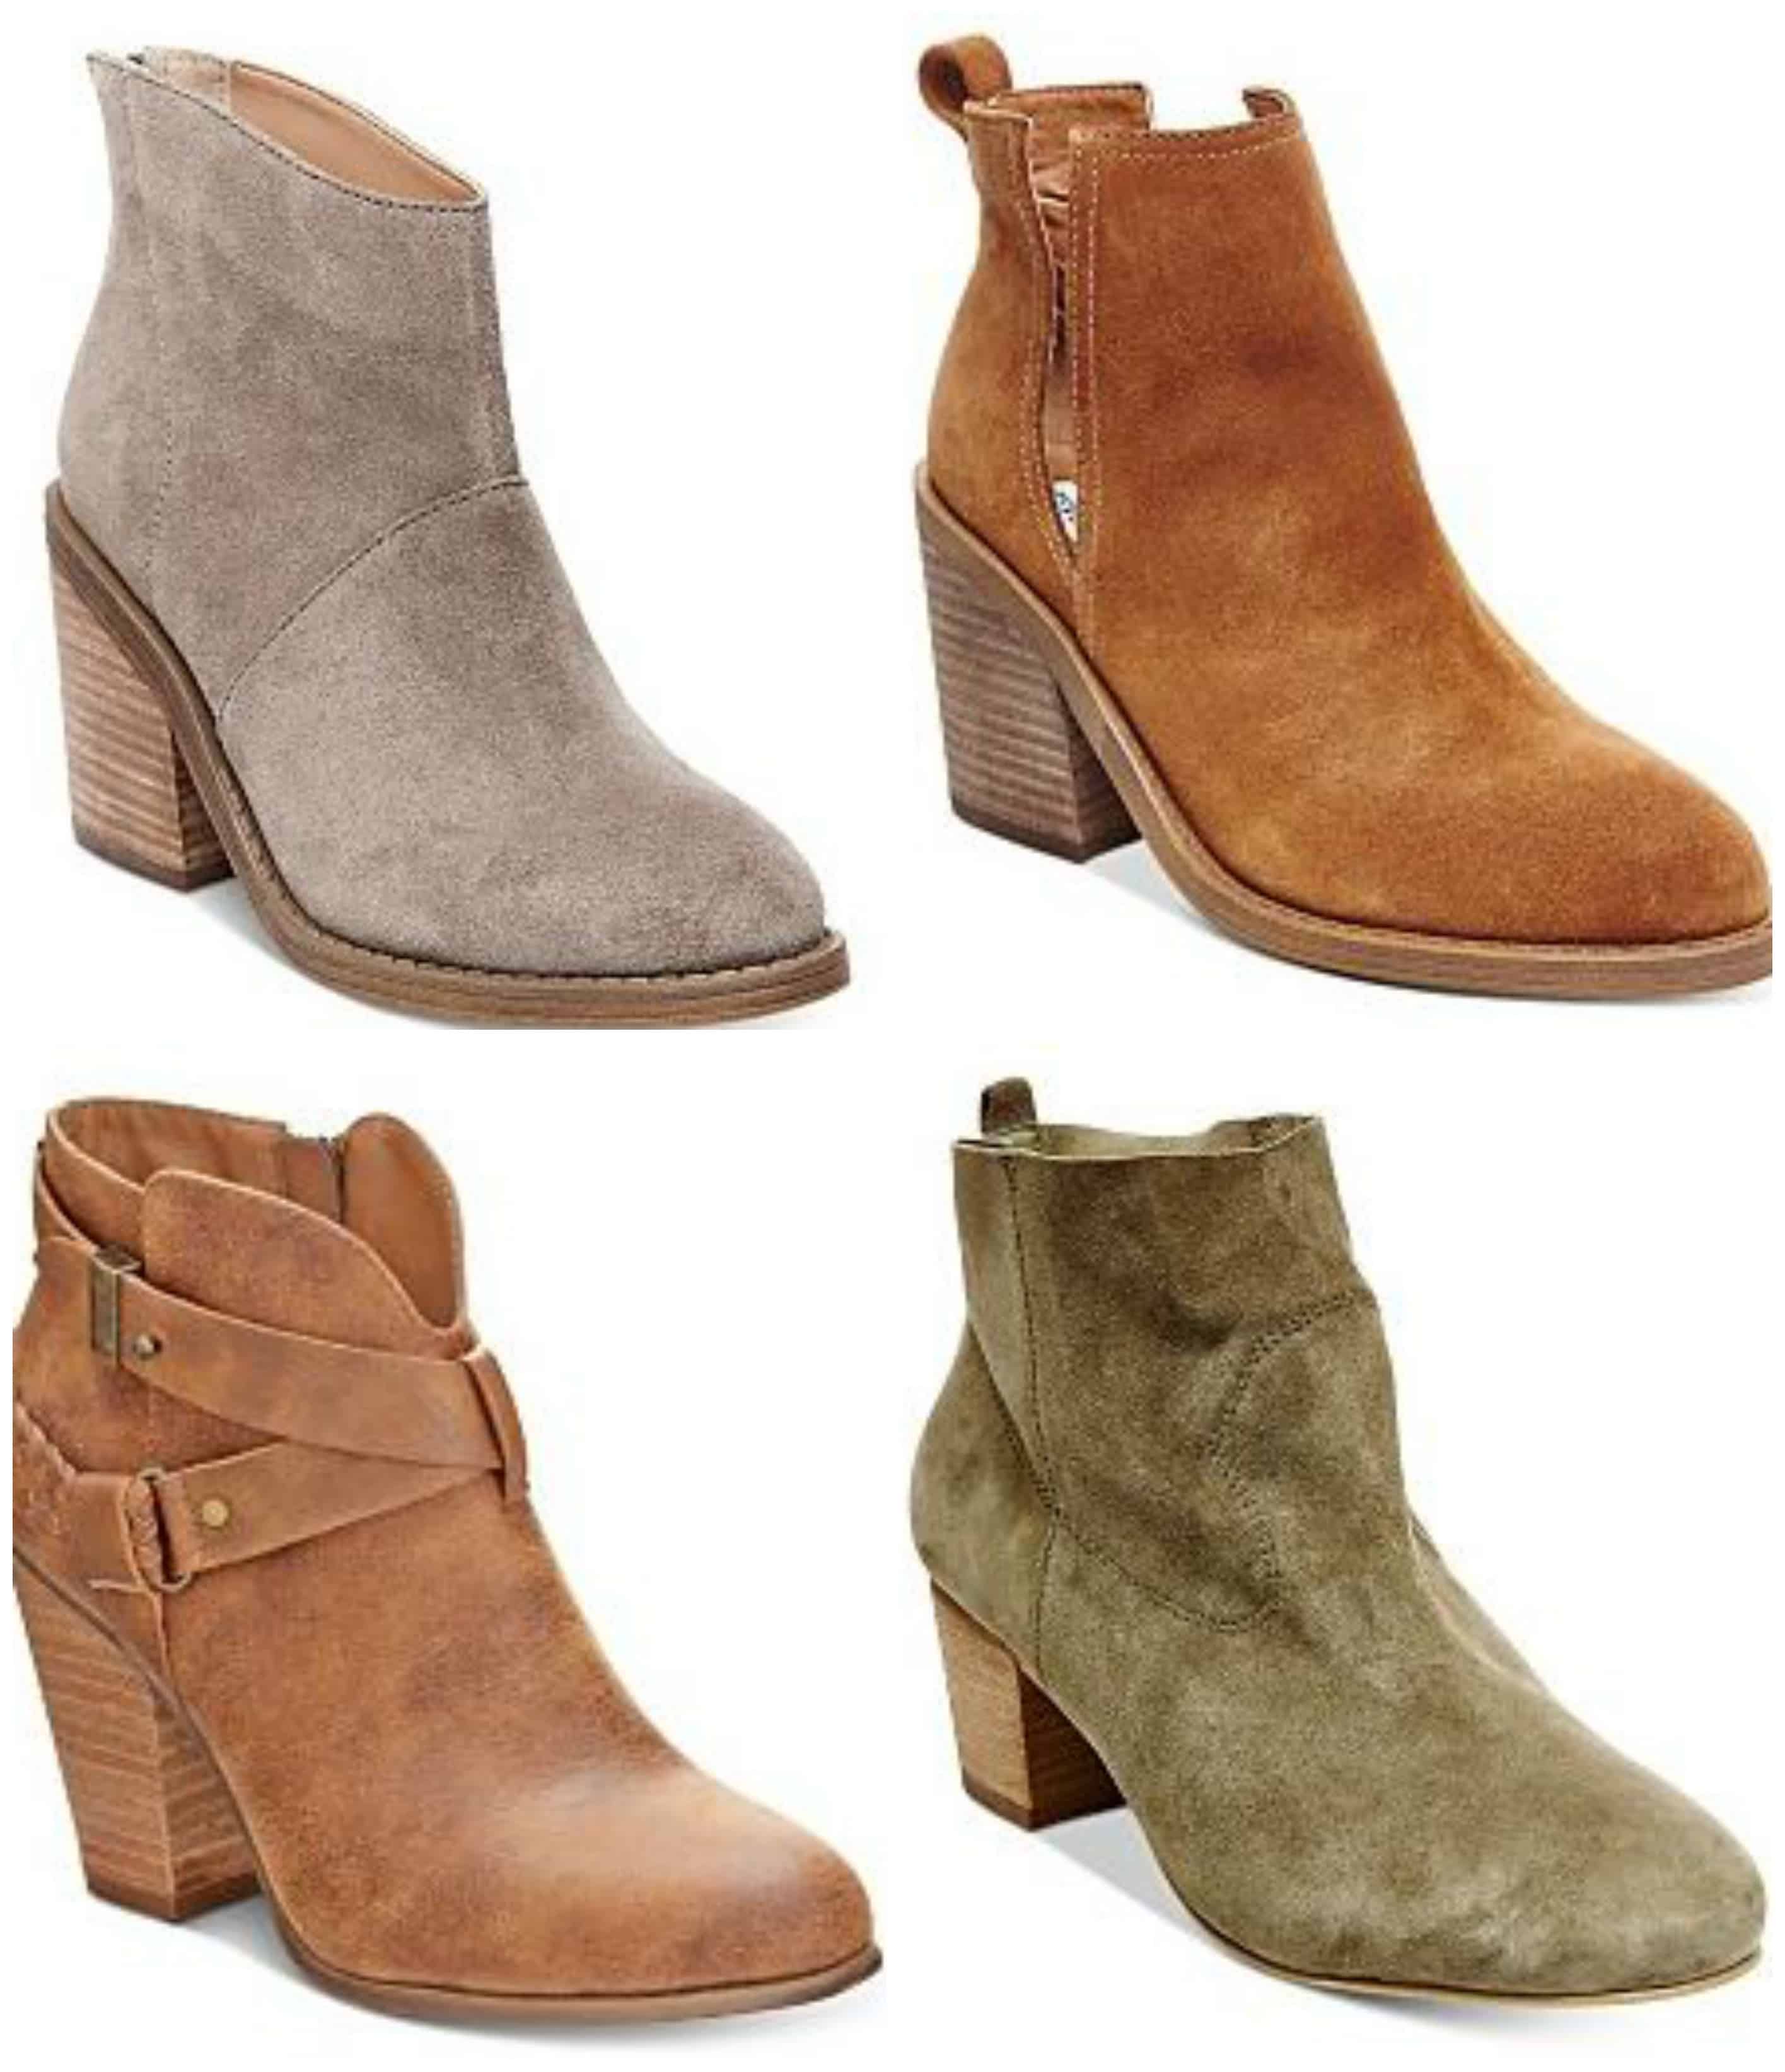 Get 75% off Women&#39;s Boots at www.waldenwongart.com